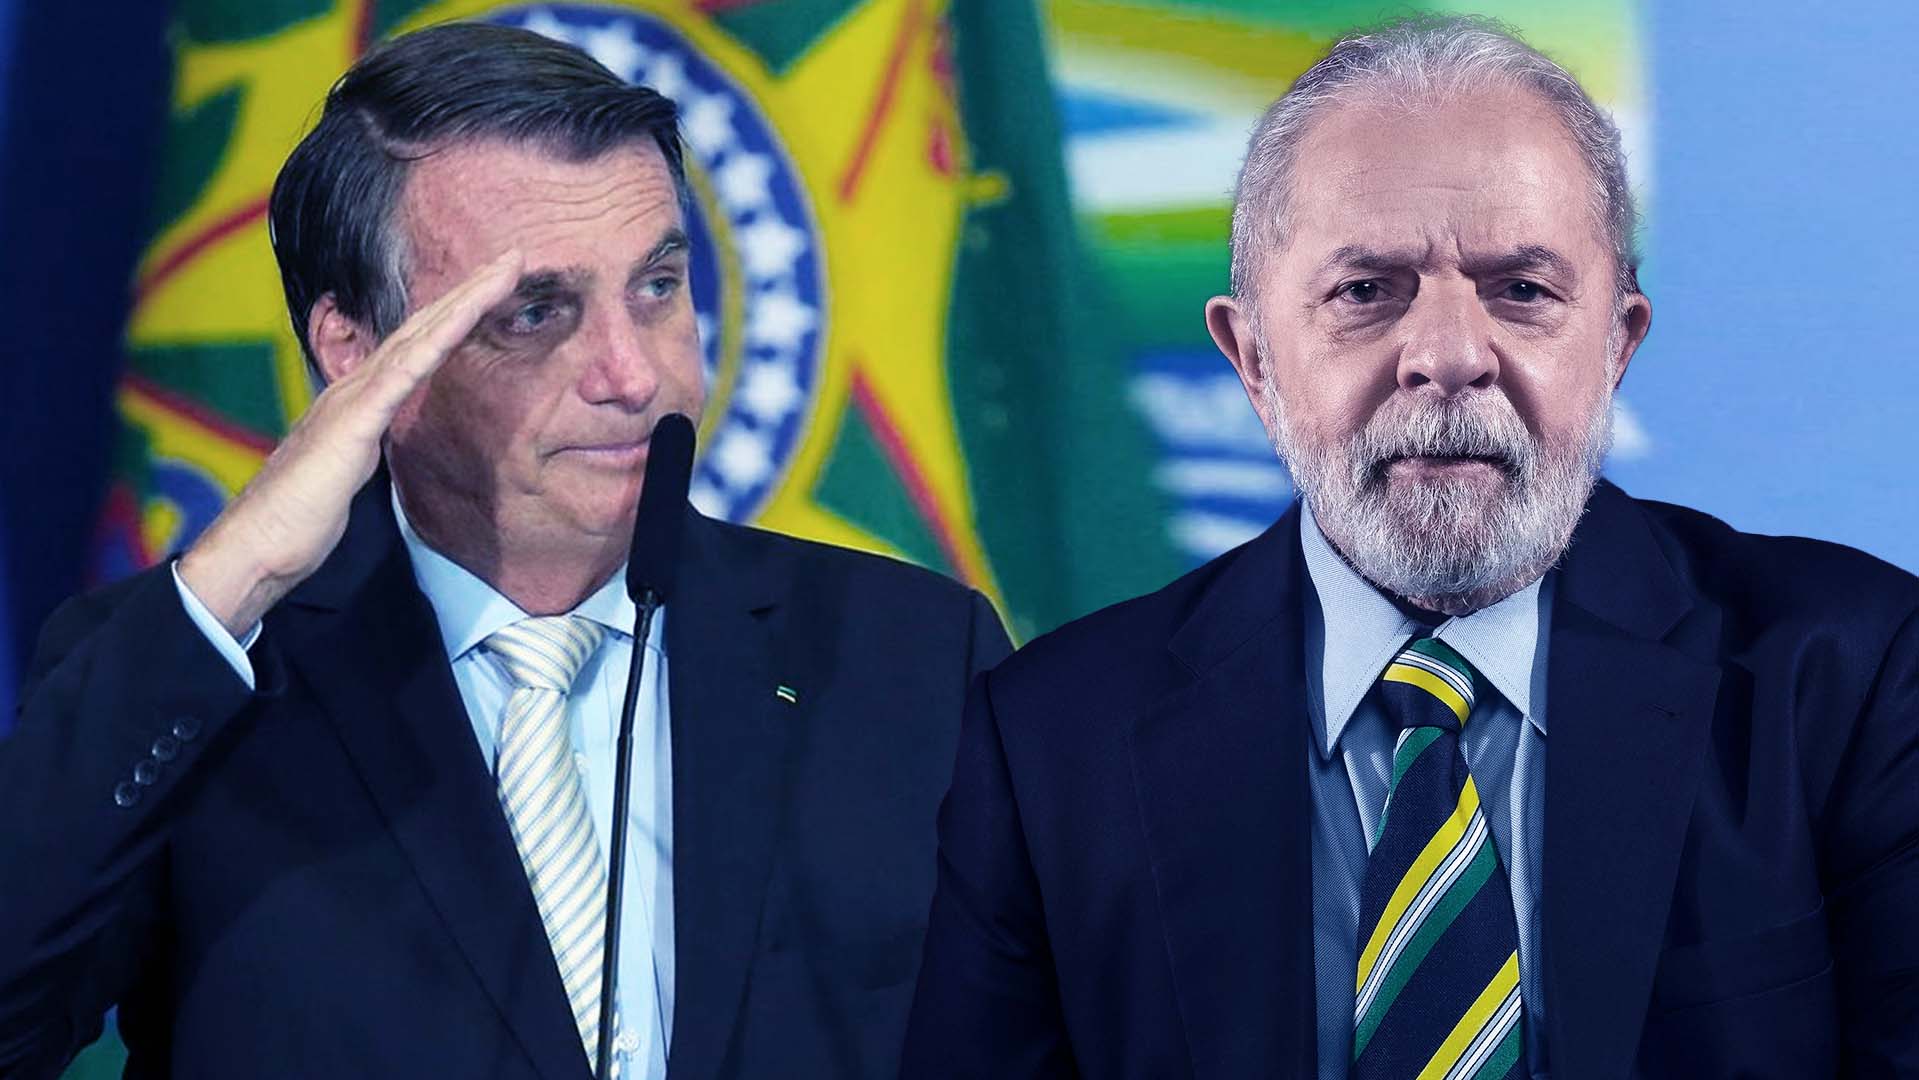 Janela partidária: PT e PL reforçam polarização, MDB e PSD ganham peso e PSDB afunda